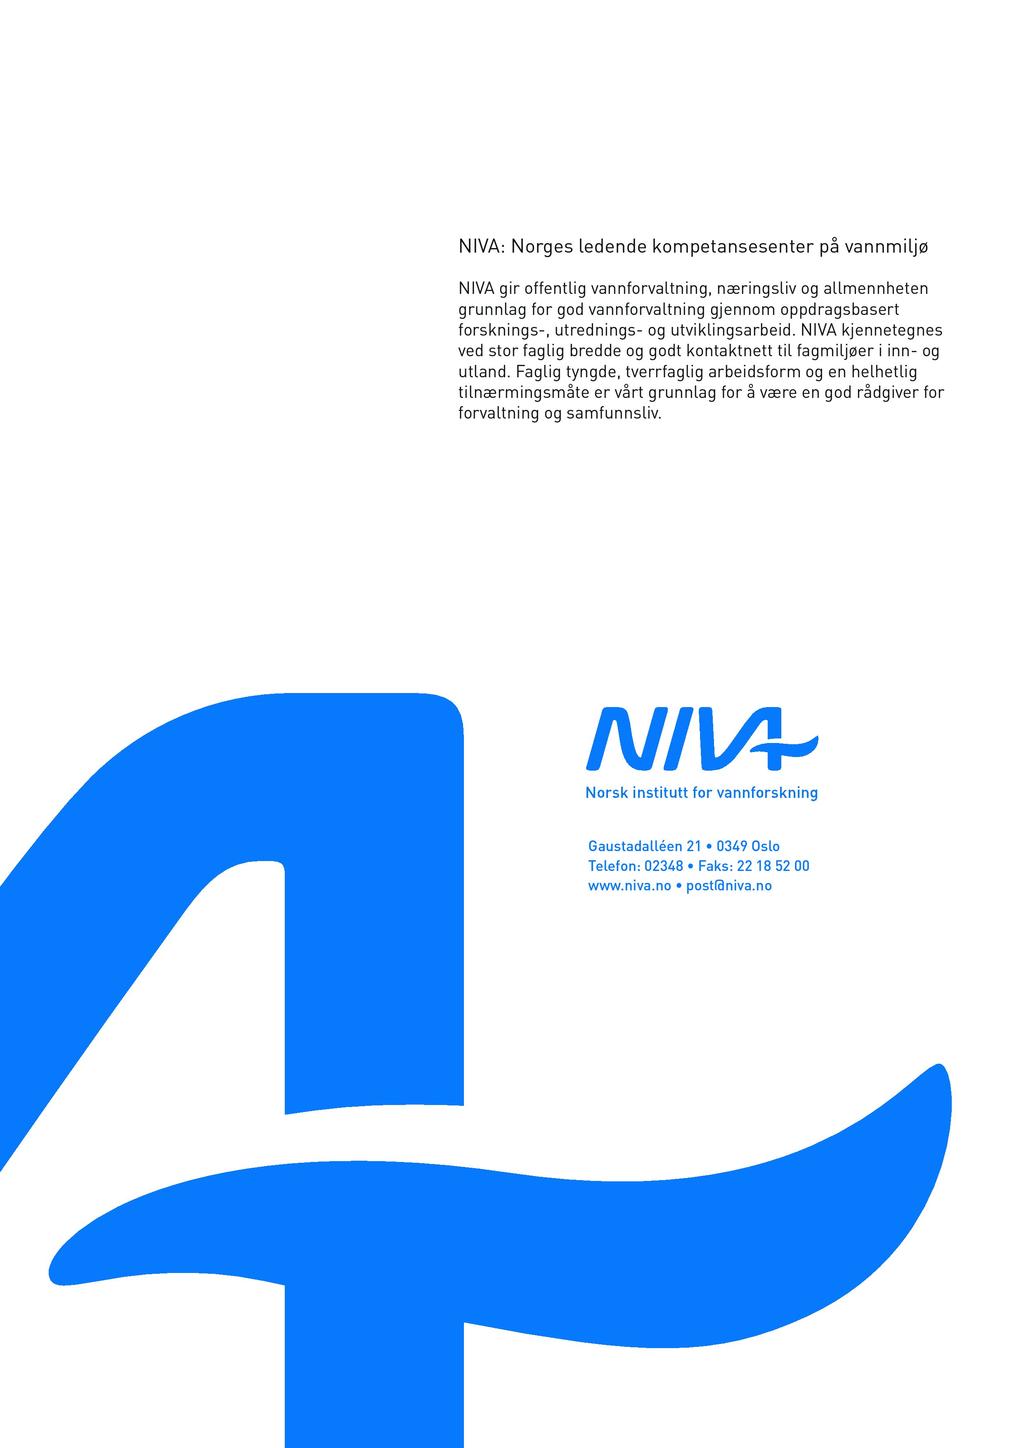 NI VA: Norges ledende kompetansesenter på vannmiljø NI VA gir offentlig vannforvaltning, næringsliv og allmennheten grunnlag for god vannforvaltning gjennom oppdragsbasert forsknings-, utrednings- og